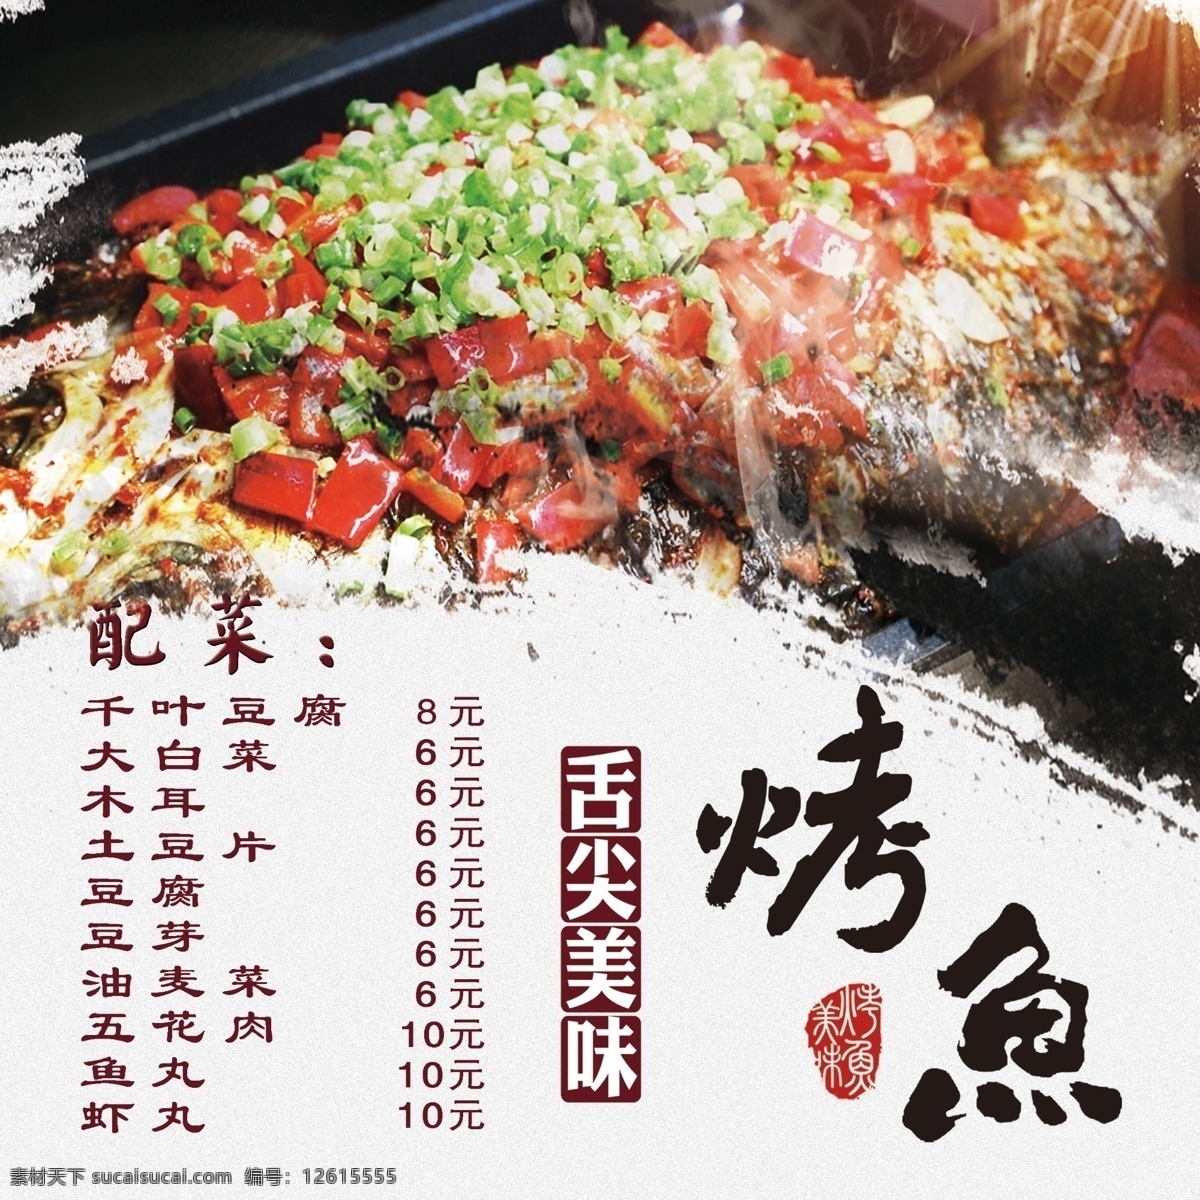 舌尖 美味 烤鱼 海报 美食 菜谱 彩排 配图